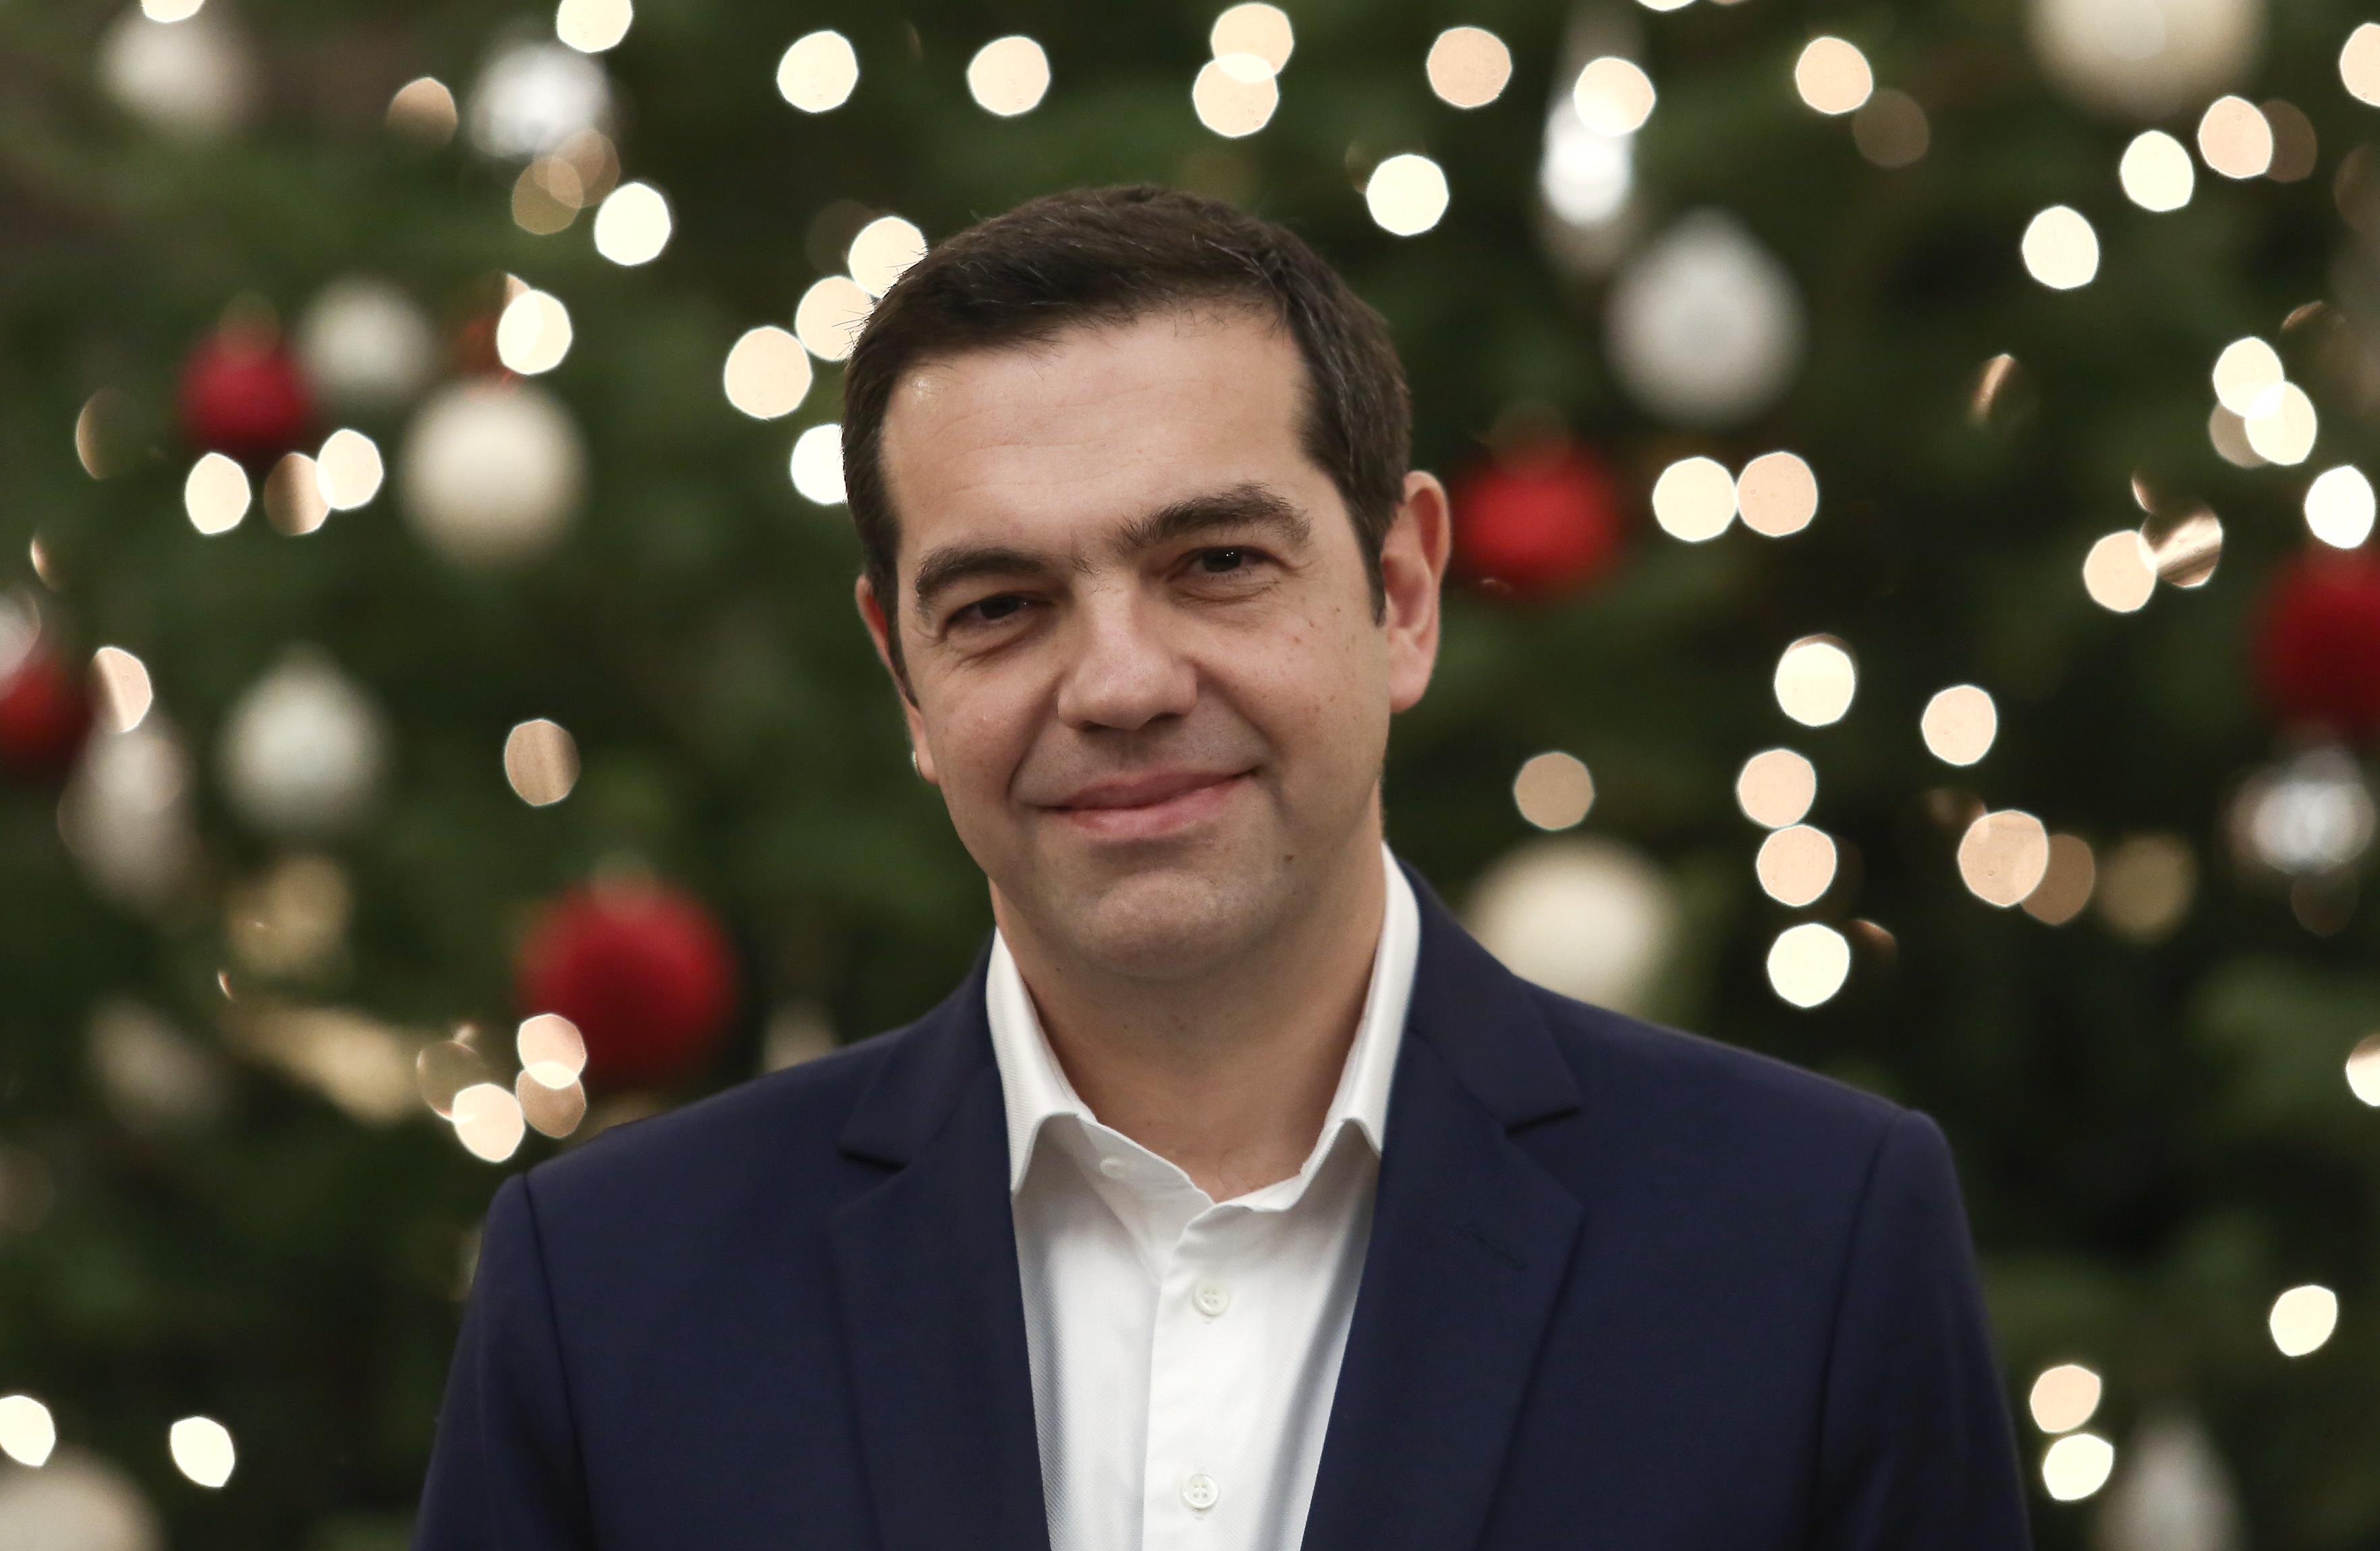 Τσίπρας: Το 2018 θα είναι χρόνος-ορόσημο για την Ελλάδα